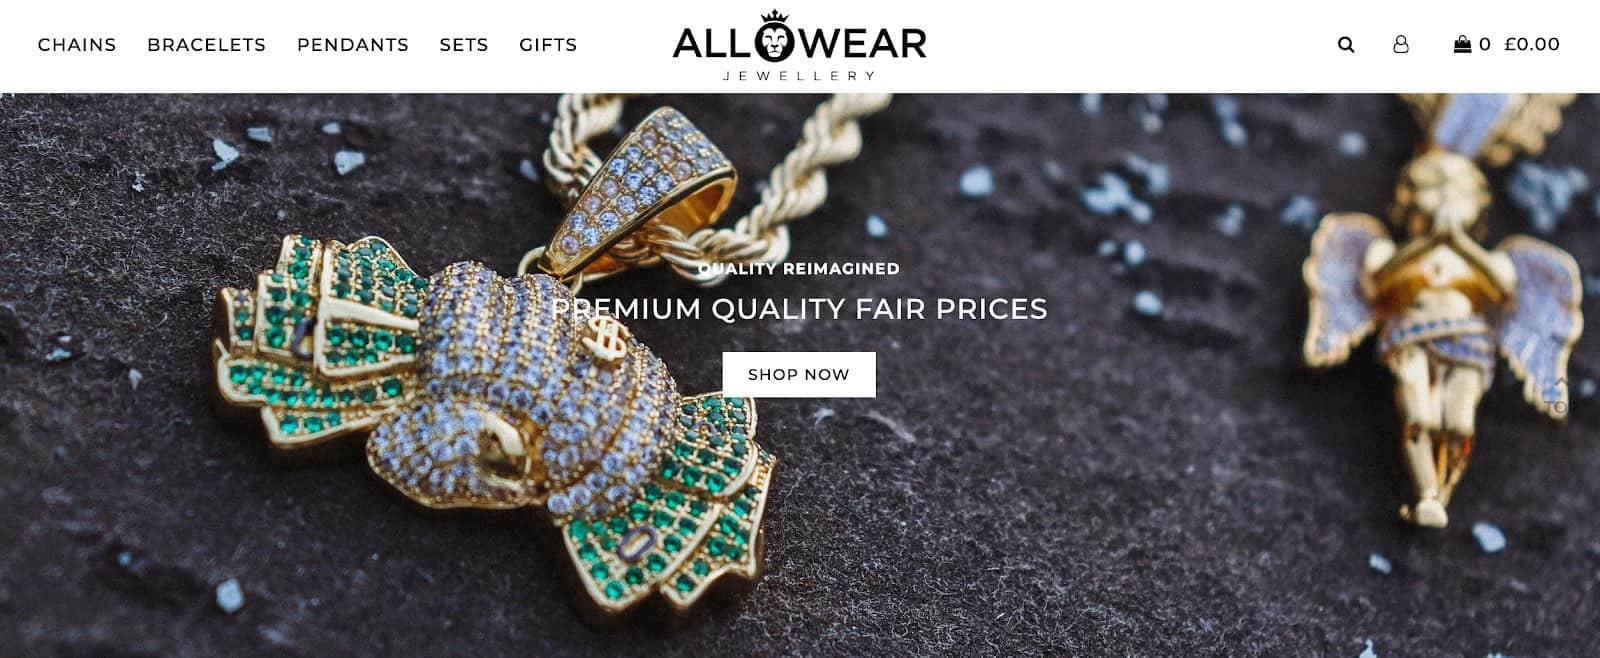 All Wear Jewellery website | Chains, bracelets, pendants